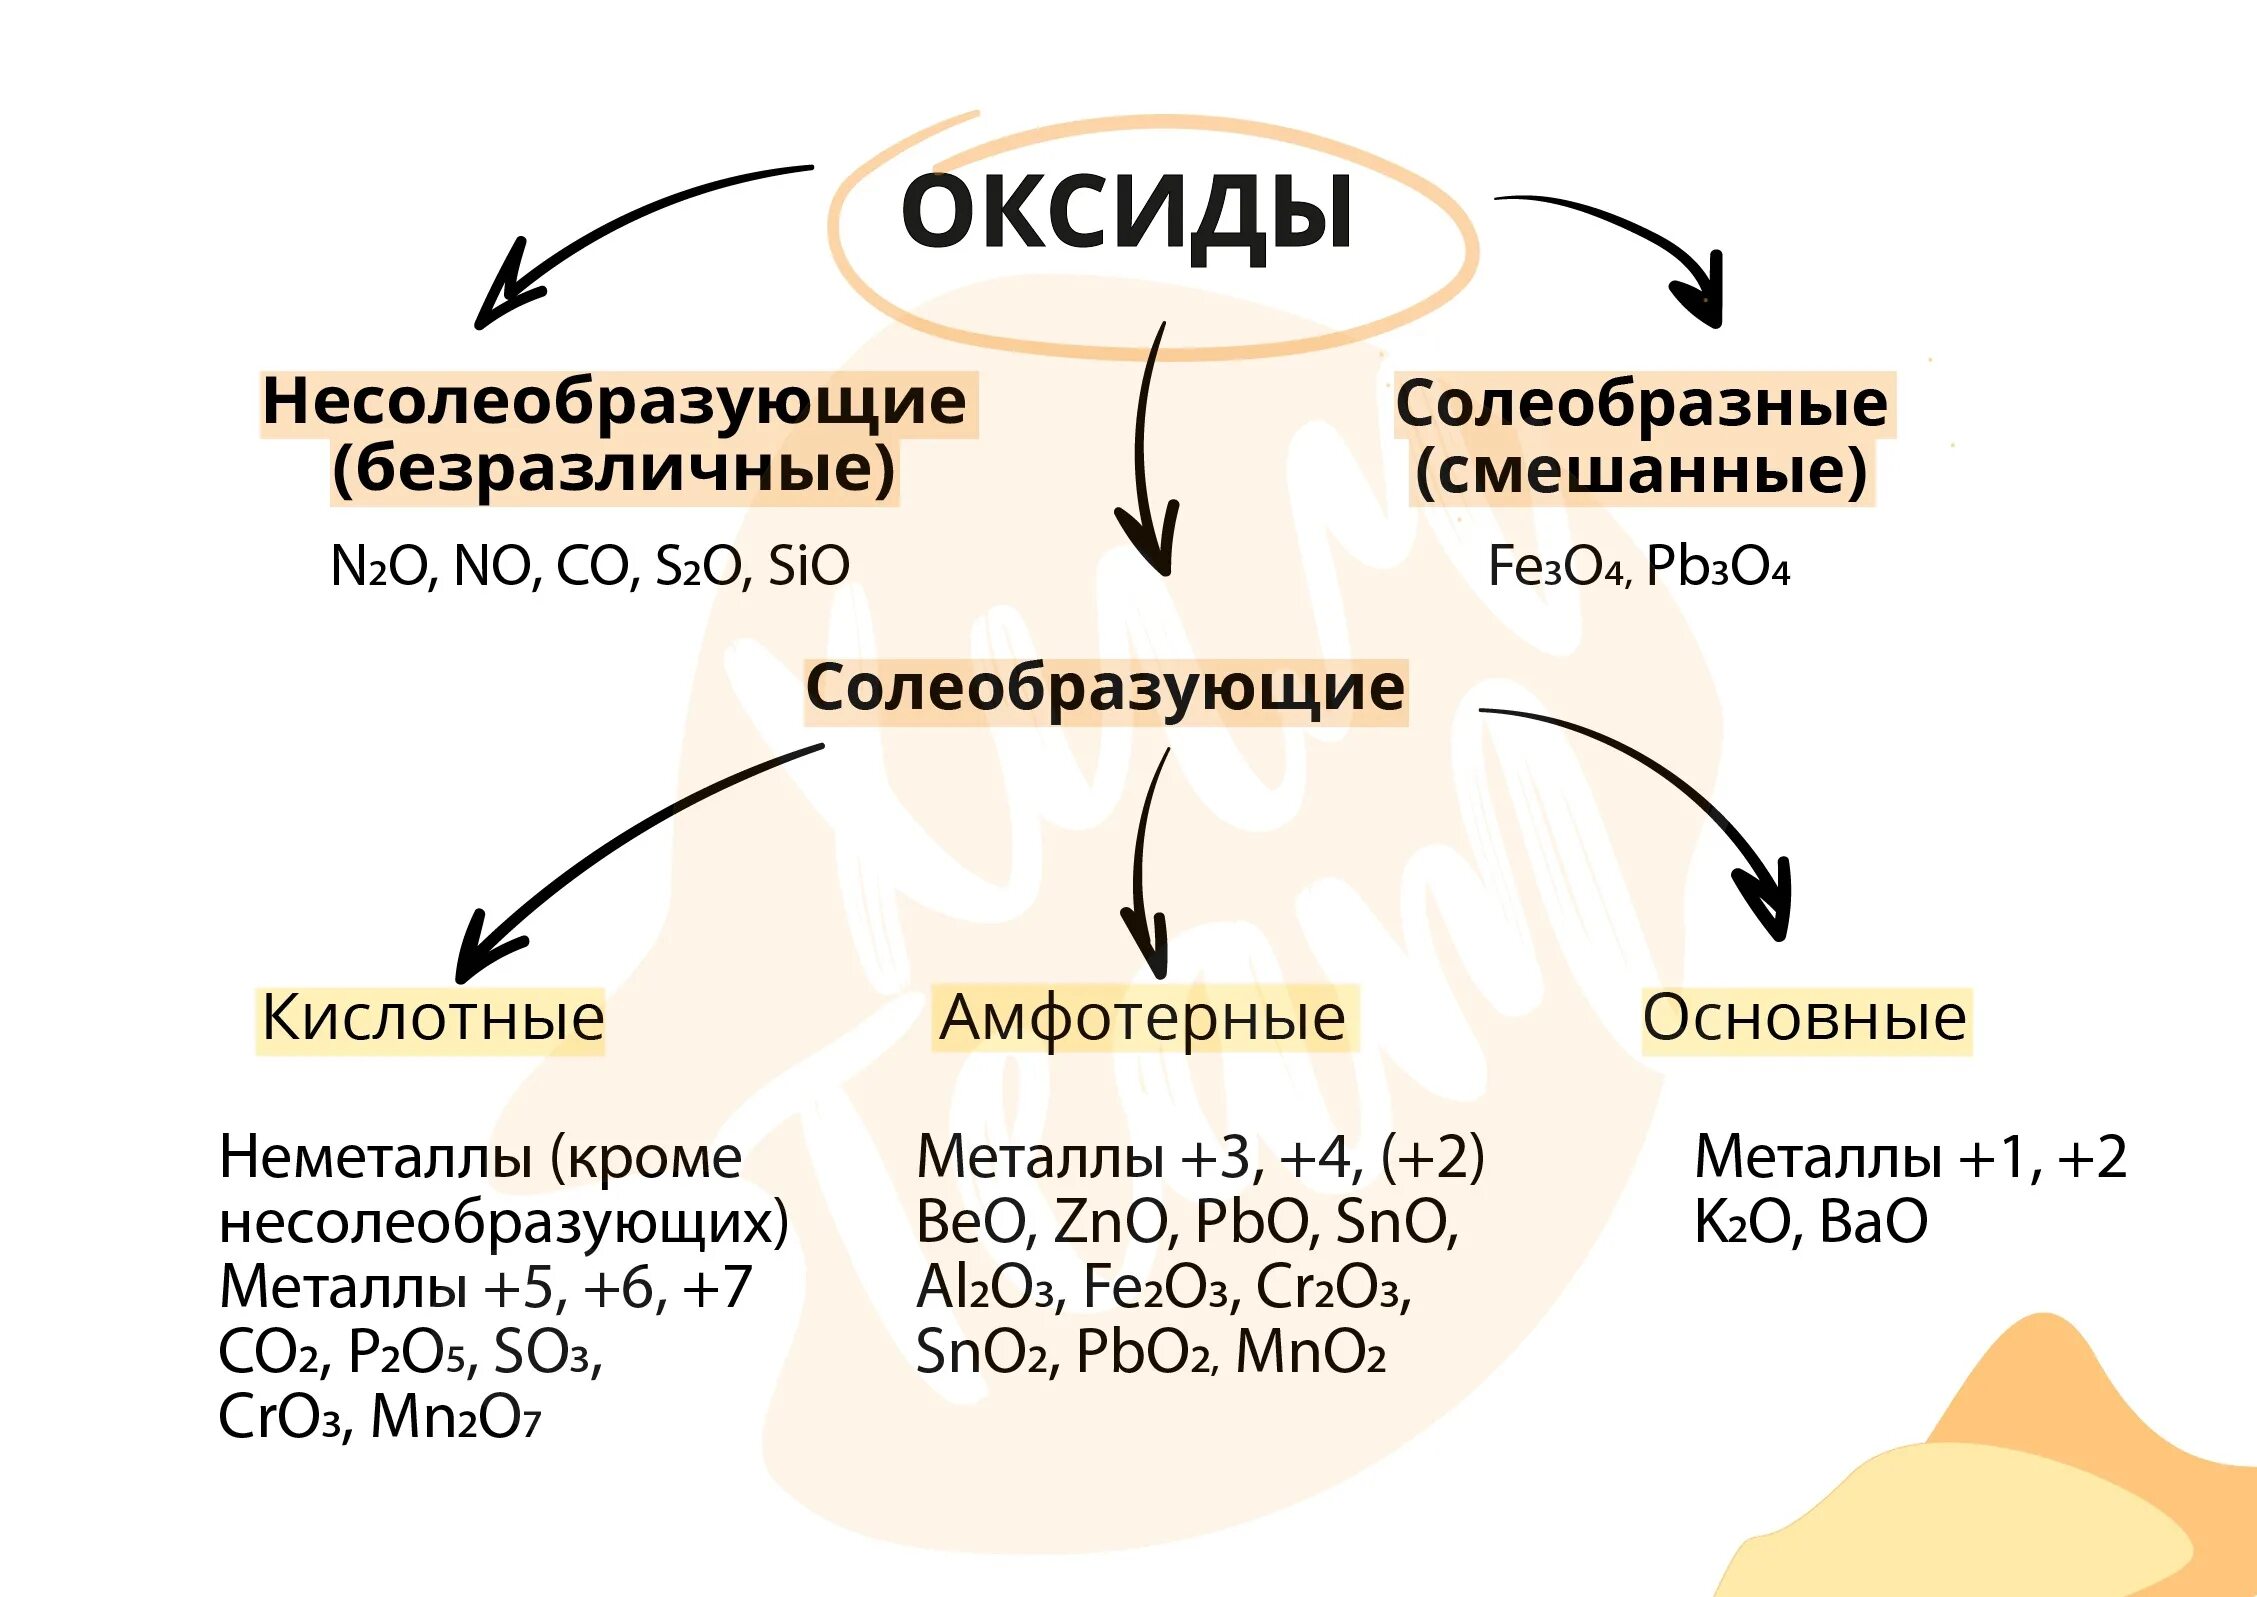 Sio2 несолеобразующий. Несолеобразующие оксиды. Примеры несолеобразующих оксидов. Классификация оксидов несолеобразующие. Основные оксиды и несолеобразующие оксиды.